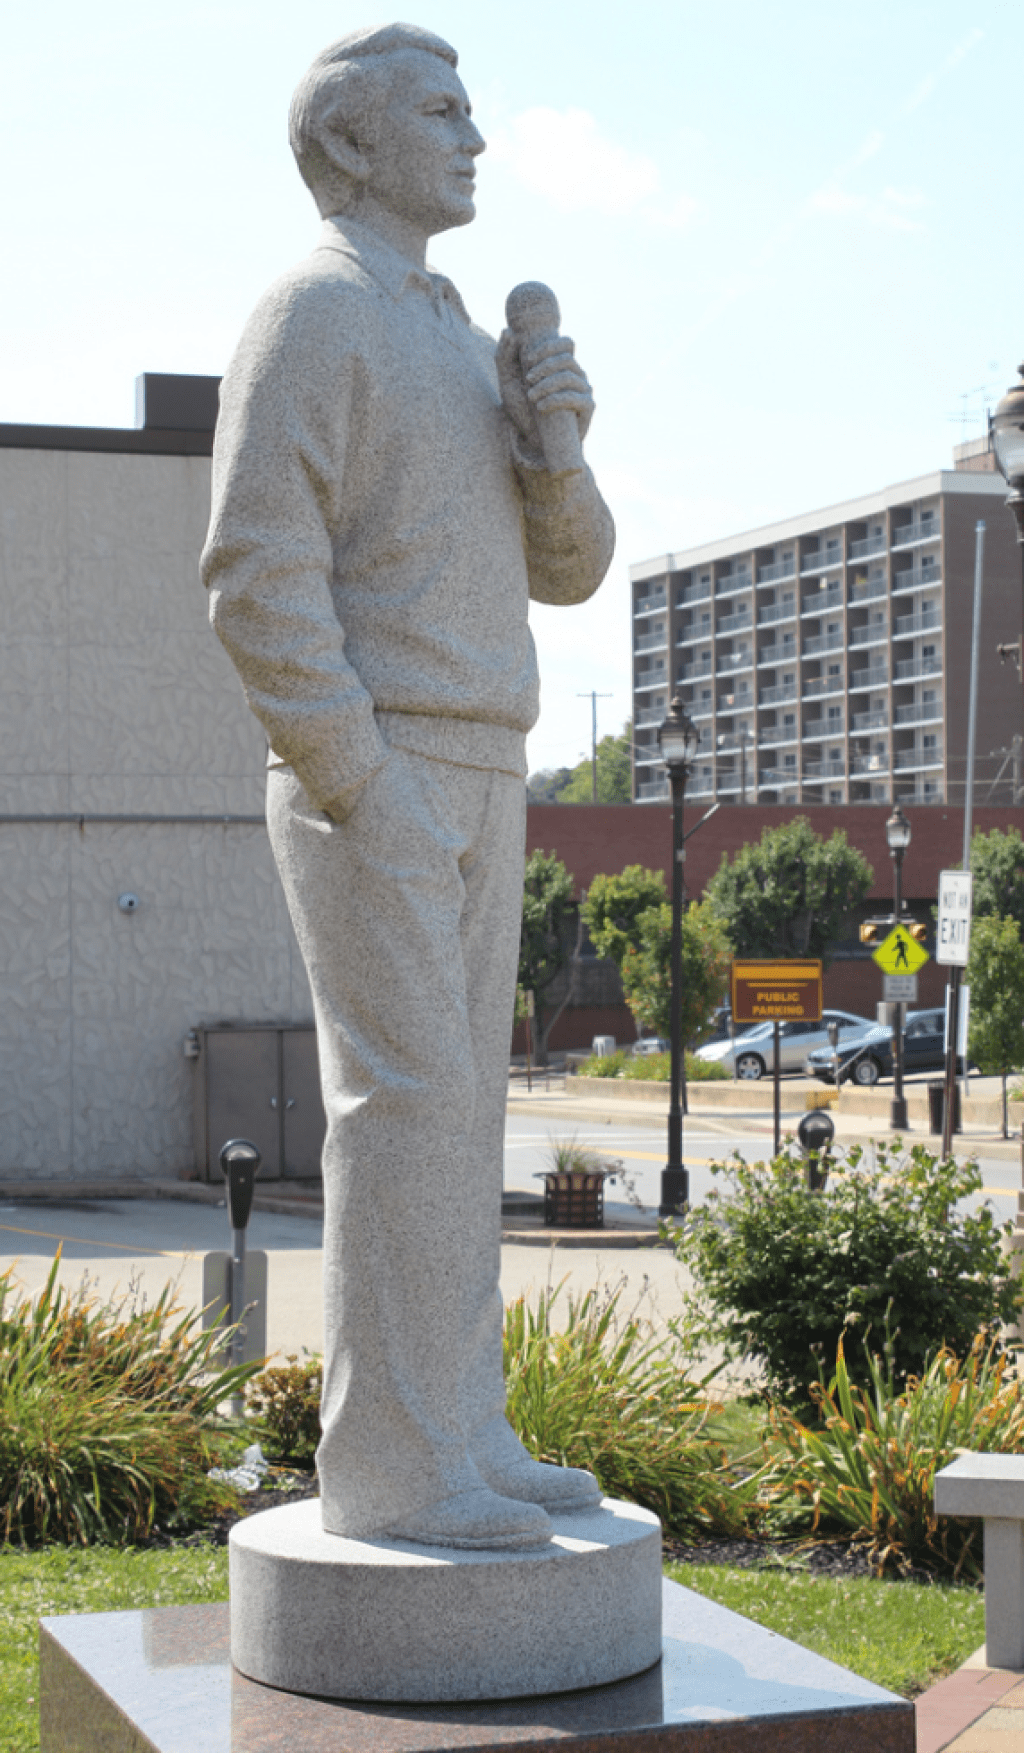 De grimeste statuer i Amerika